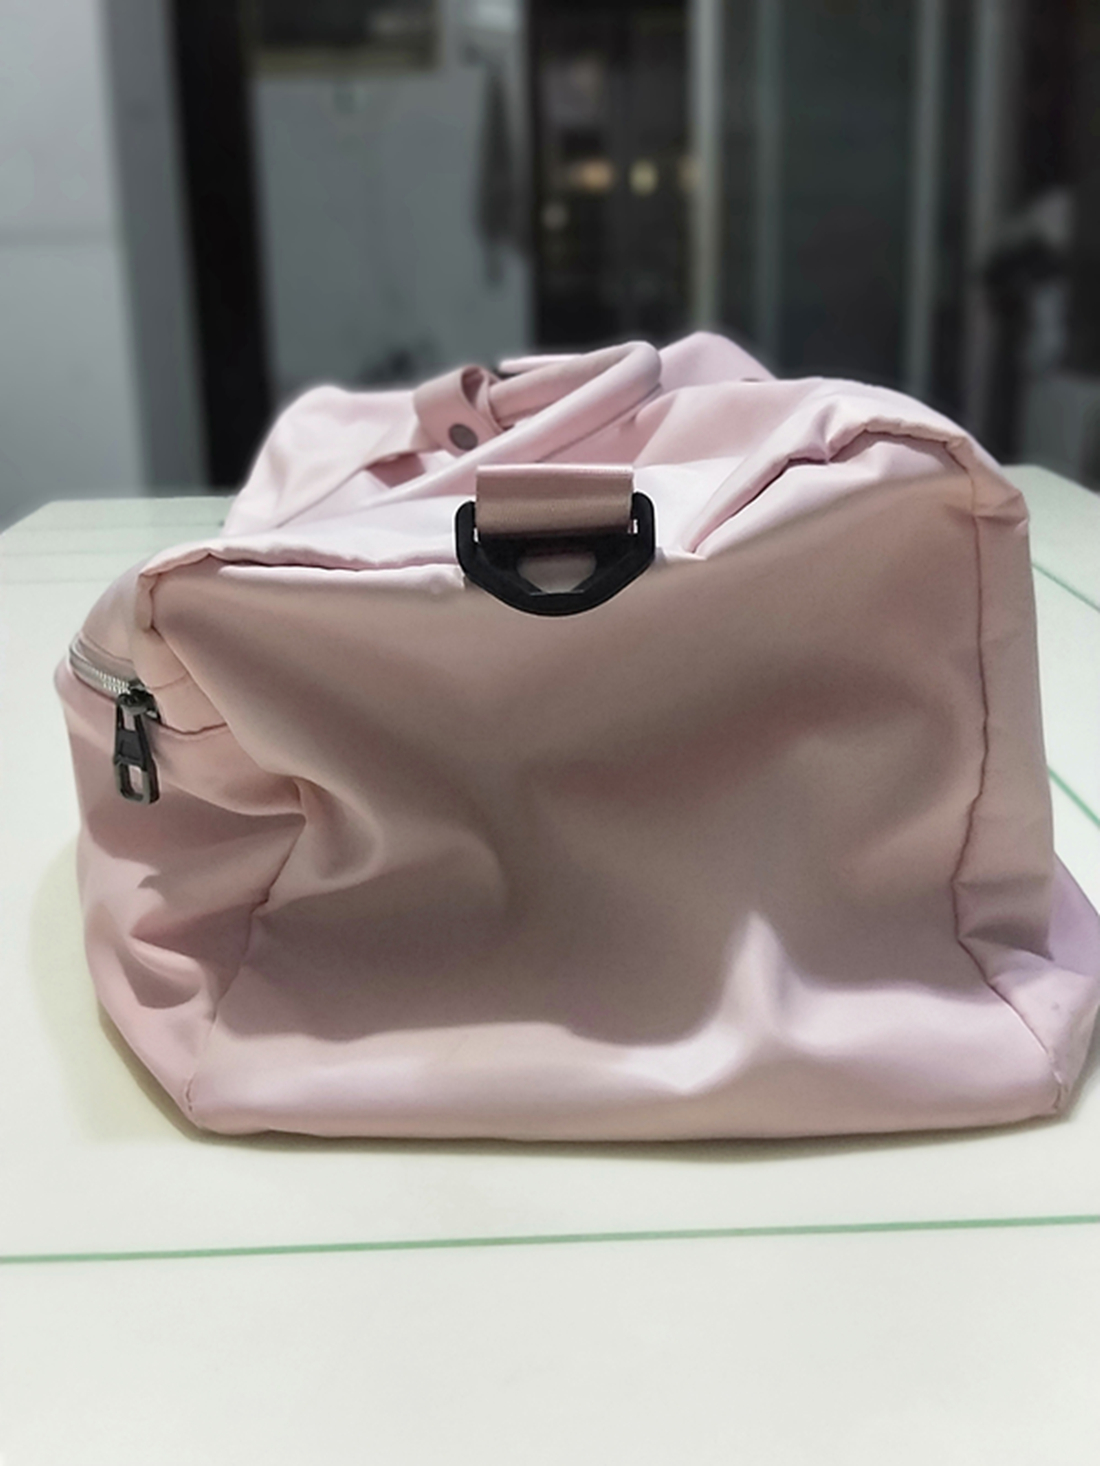 LANNEY Travel Bag,Sports Tote Gym Bag,Shoulder Weekender Overnight Bag for Women